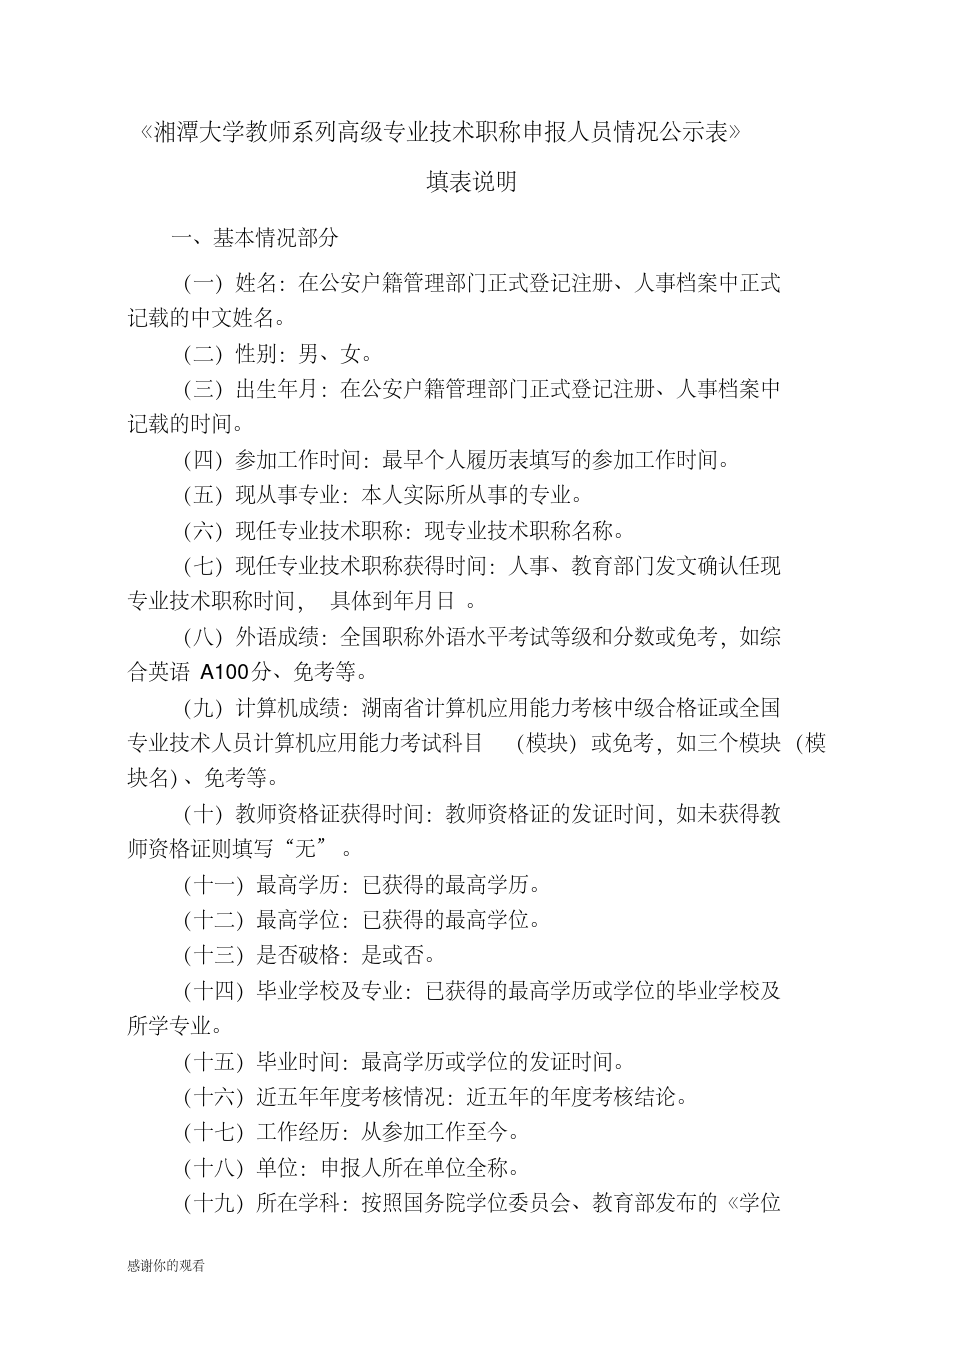 湘潭大学教师系列高级专业技术职称申报人员情况公示表.doc_3.png